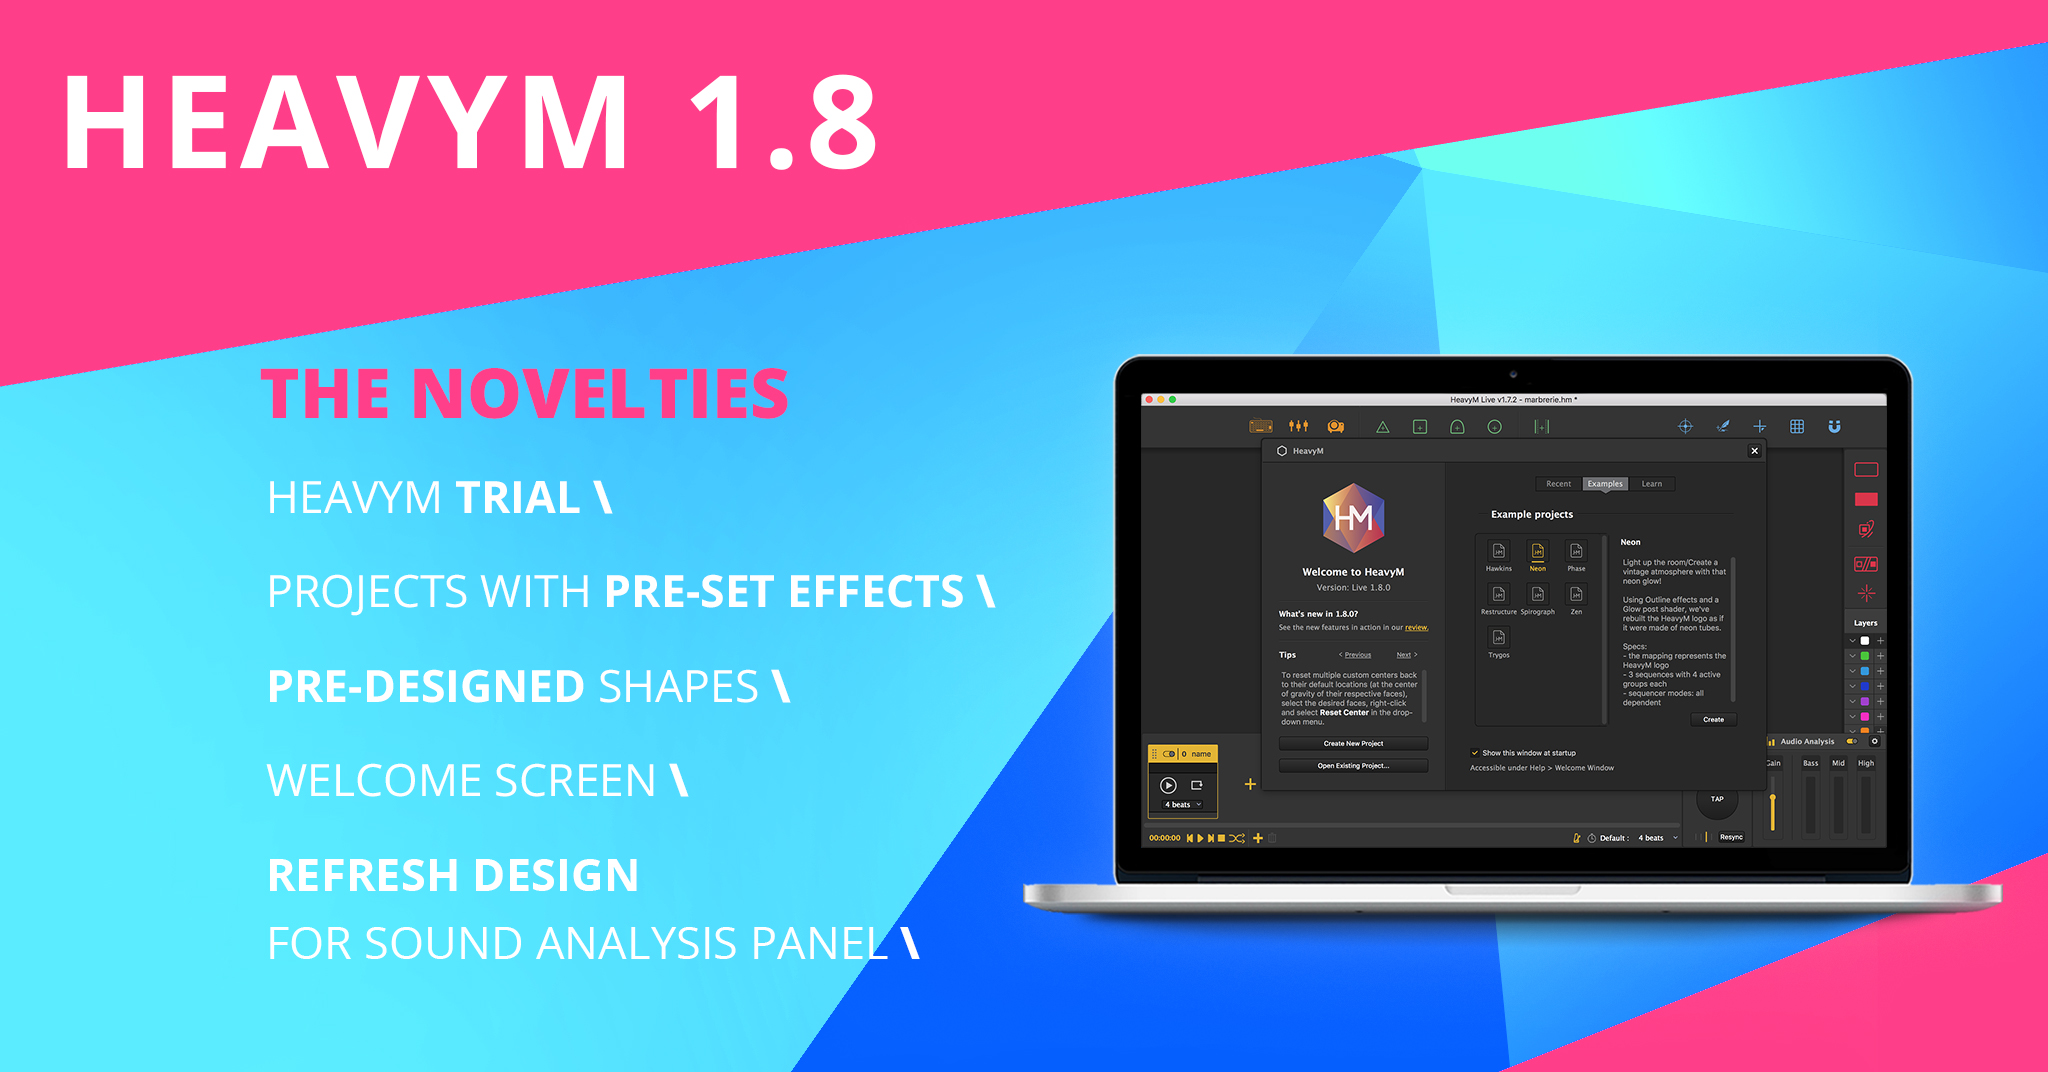 Novelties HM 1.8 update